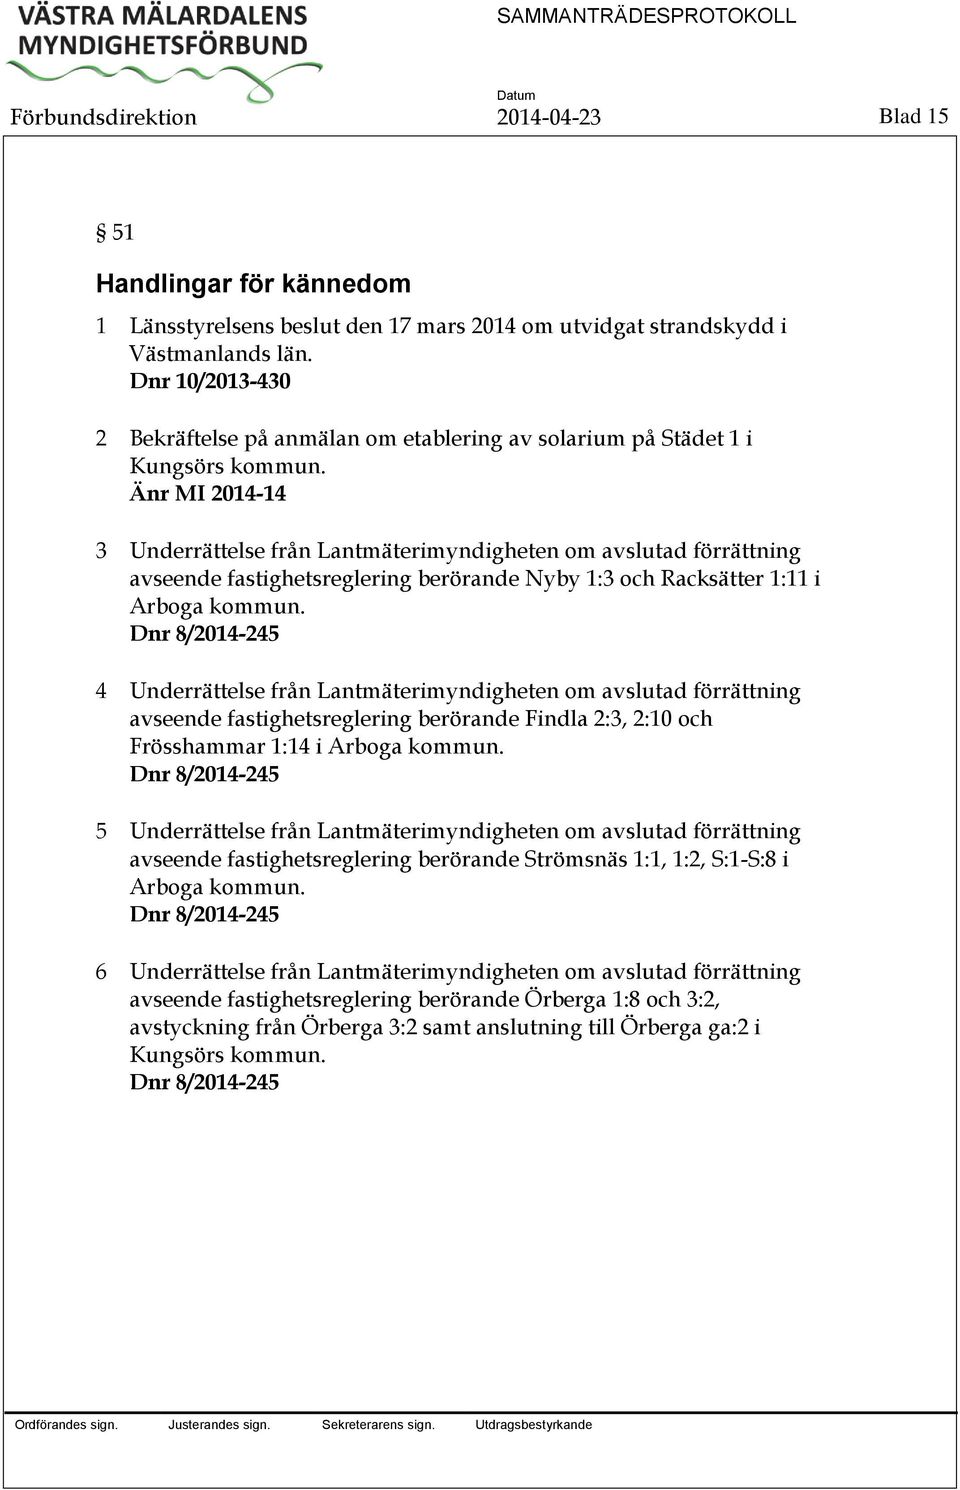 Änr MI 2014-14 3 Underrättelse från Lantmäterimyndigheten om avslutad förrättning avseende fastighetsreglering berörande Nyby 1:3 och Racksätter 1:11 i Arboga kommun.